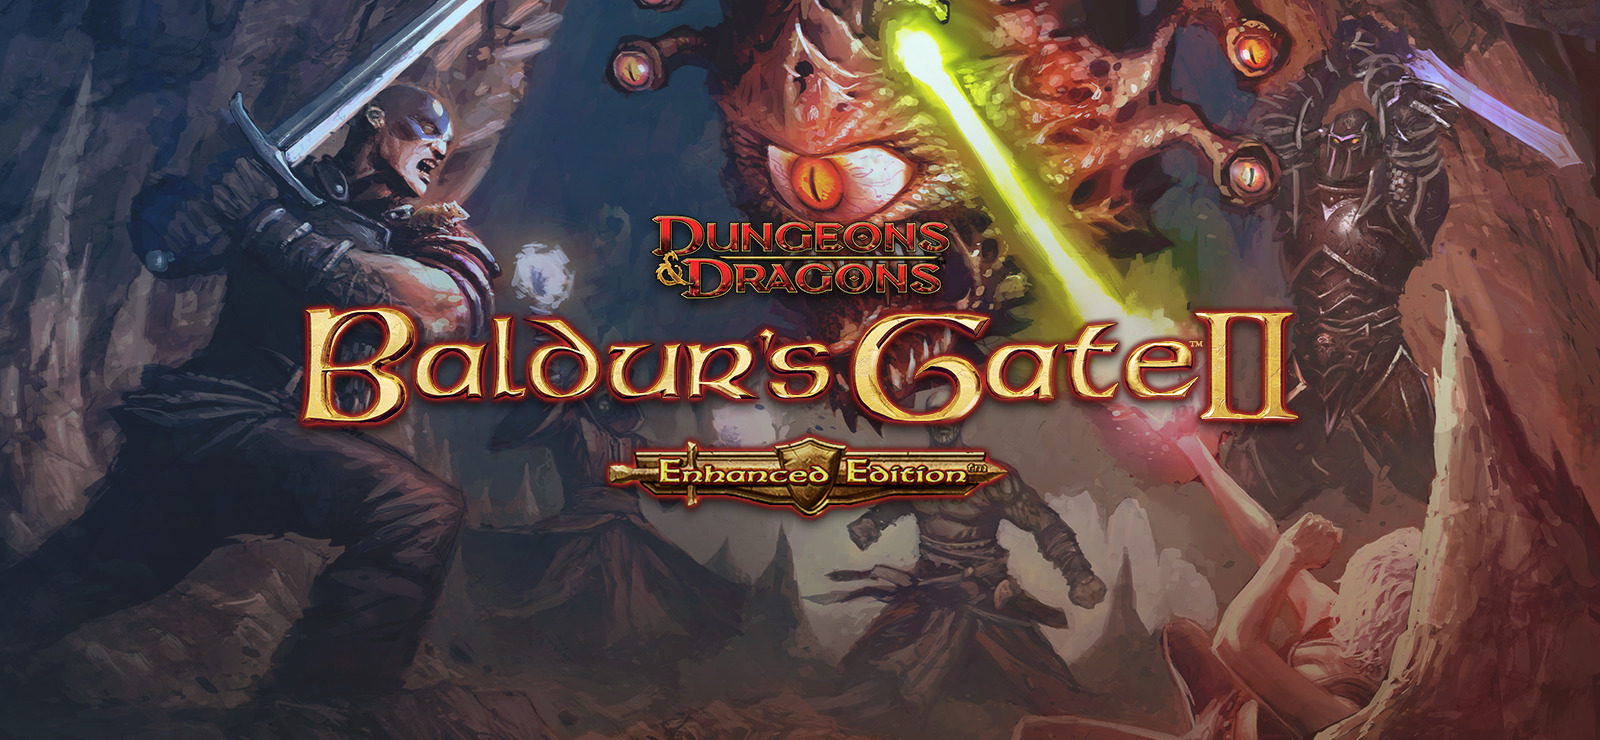 baldurs gate enhanced edition guide